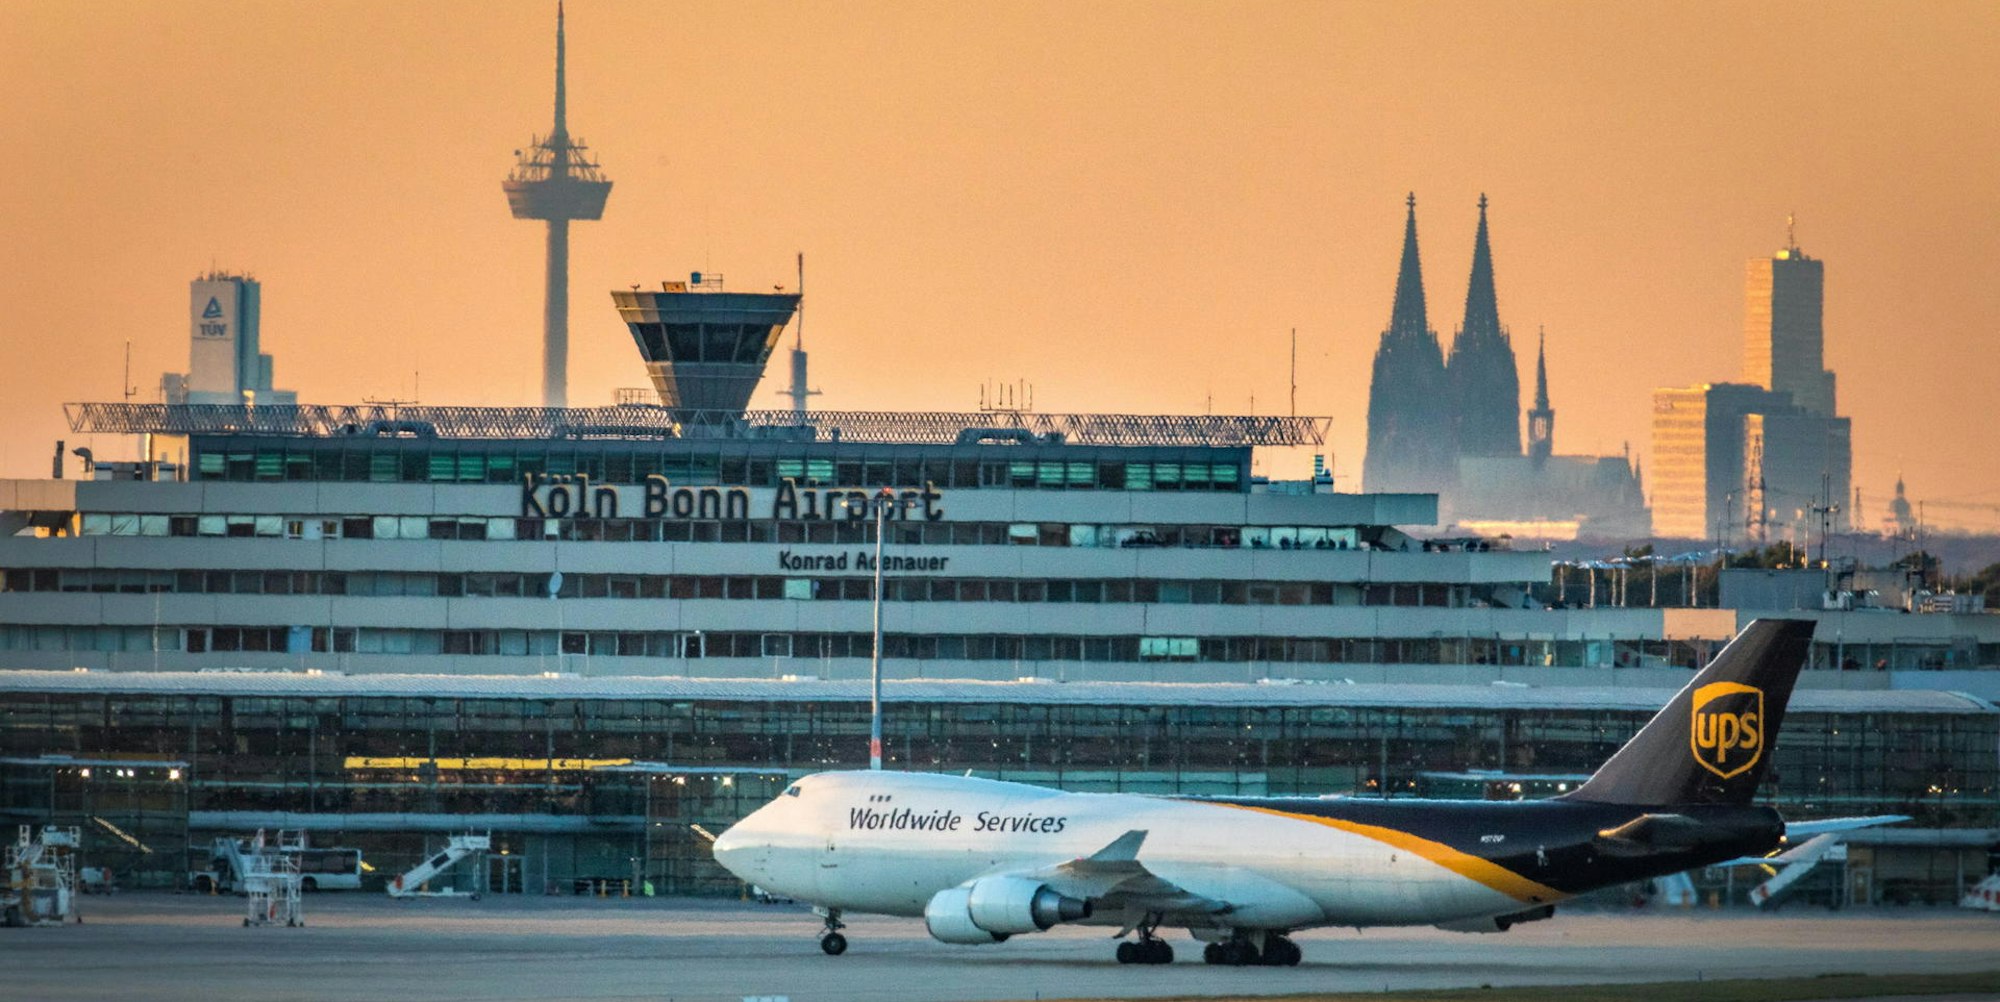 Flughafen Köln Bonn Frachtflugzeug